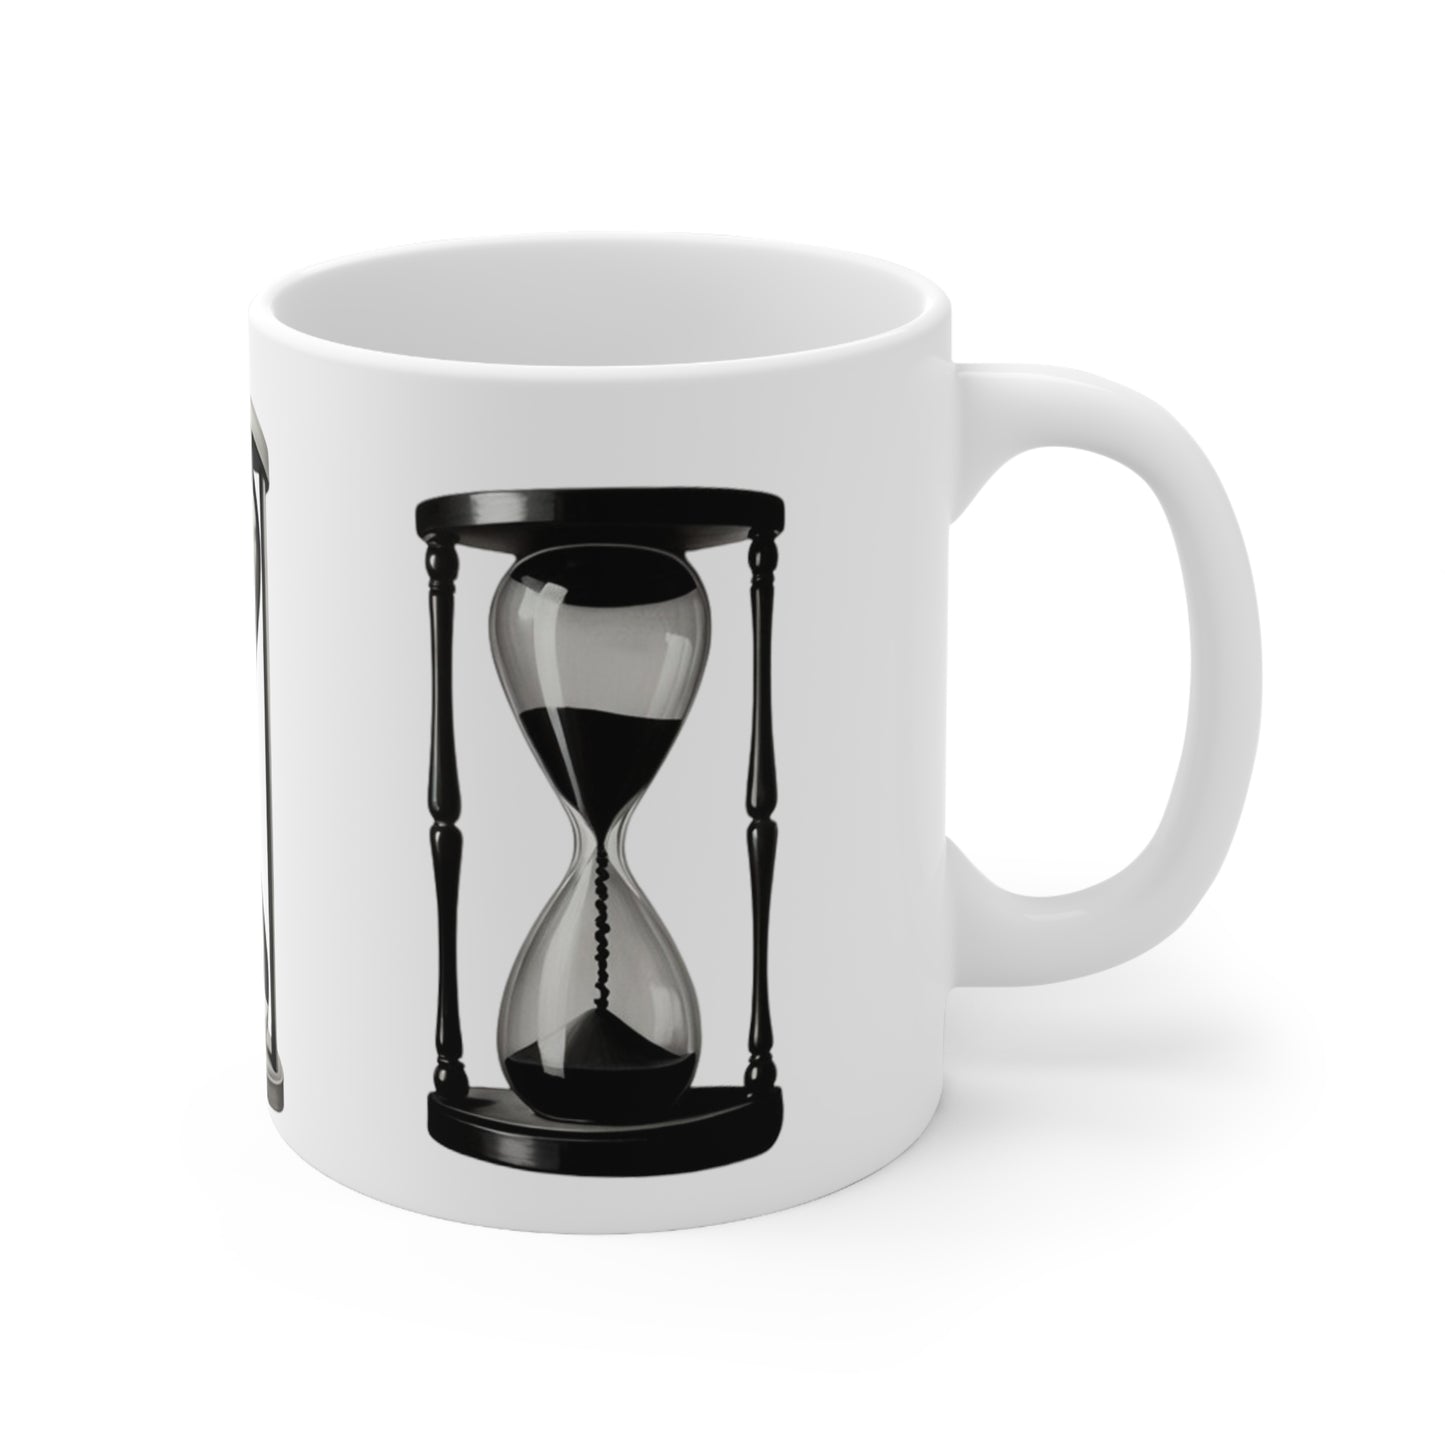 Black and White Hourglass Mug - Ceramic Coffee Mug 11oz